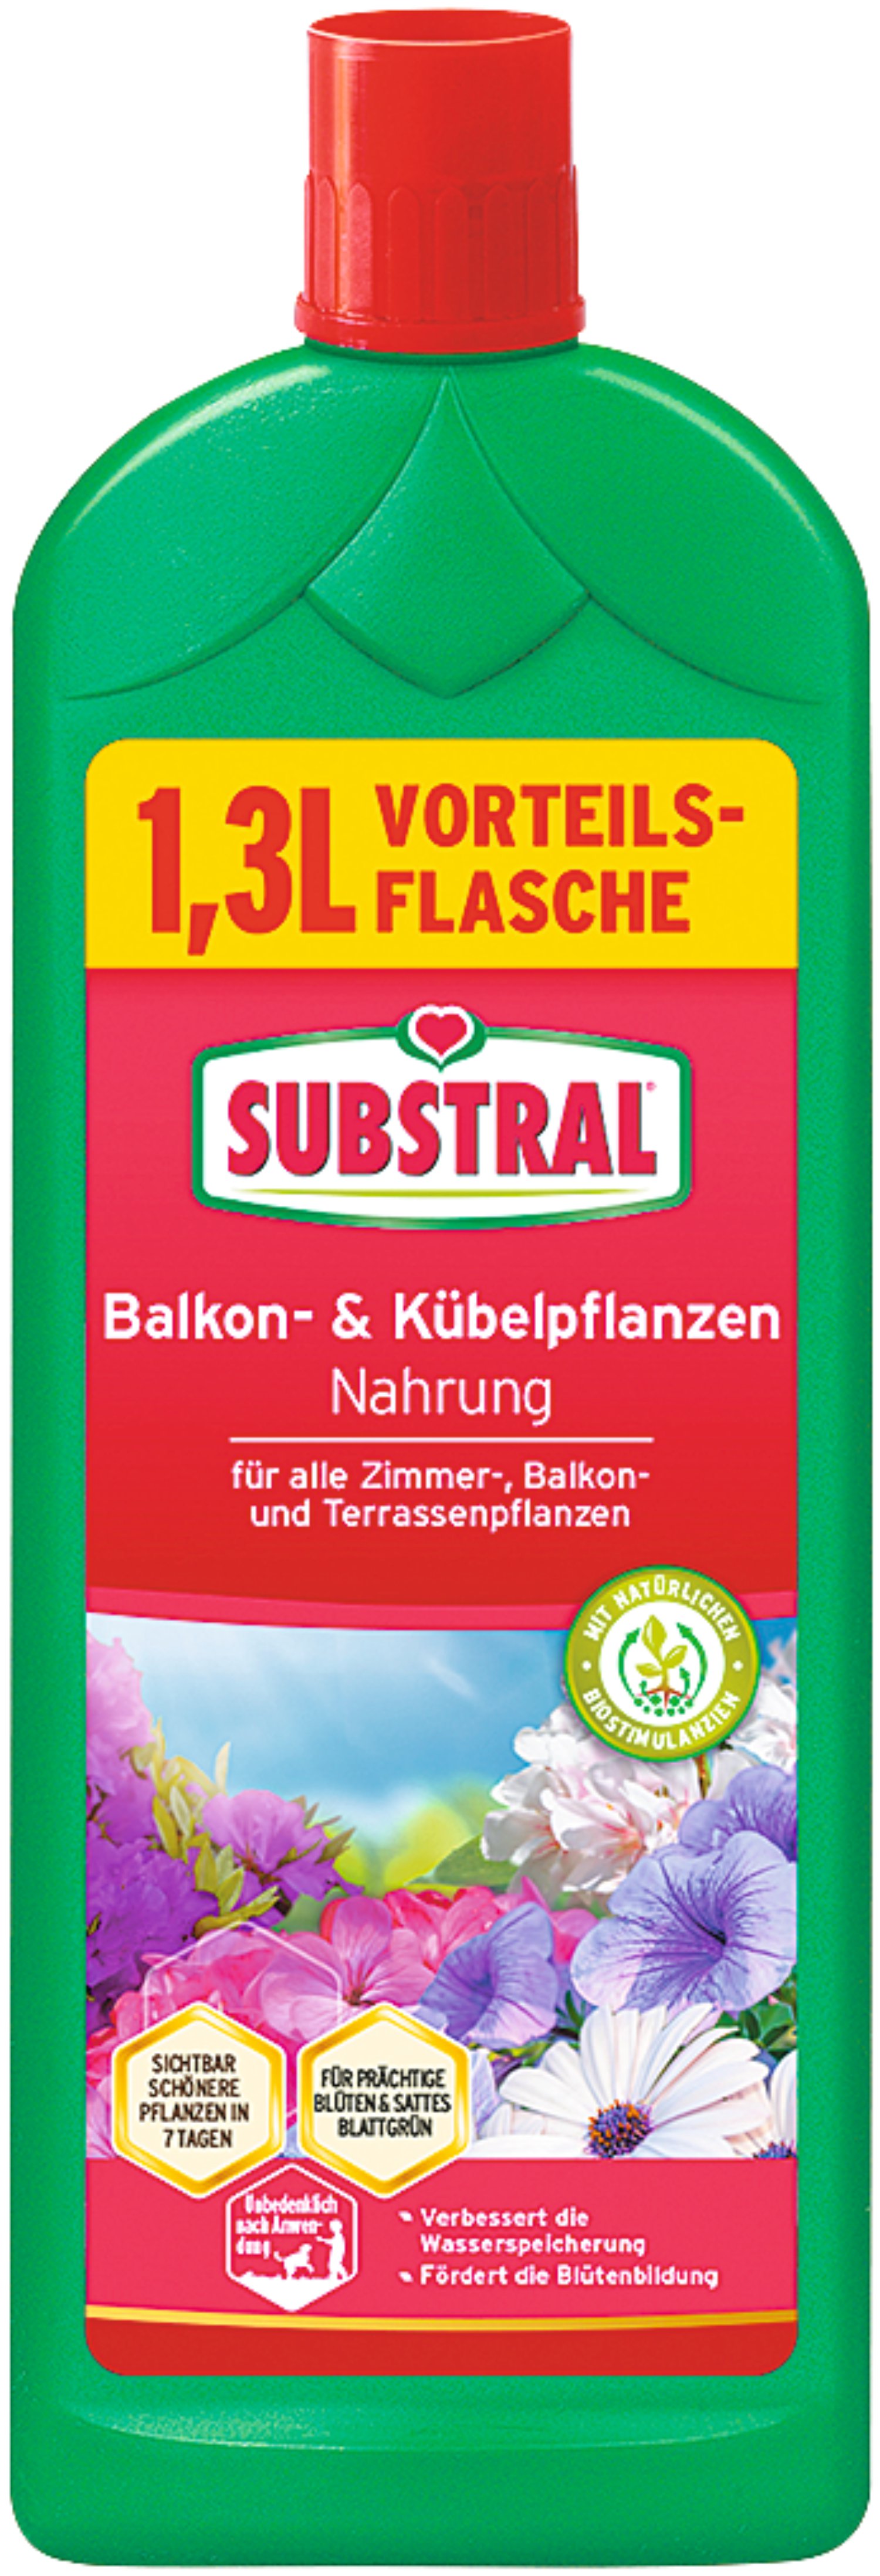 SUBSTRAL® Balkon- und Kübelpflanzennahrung 1,3 l